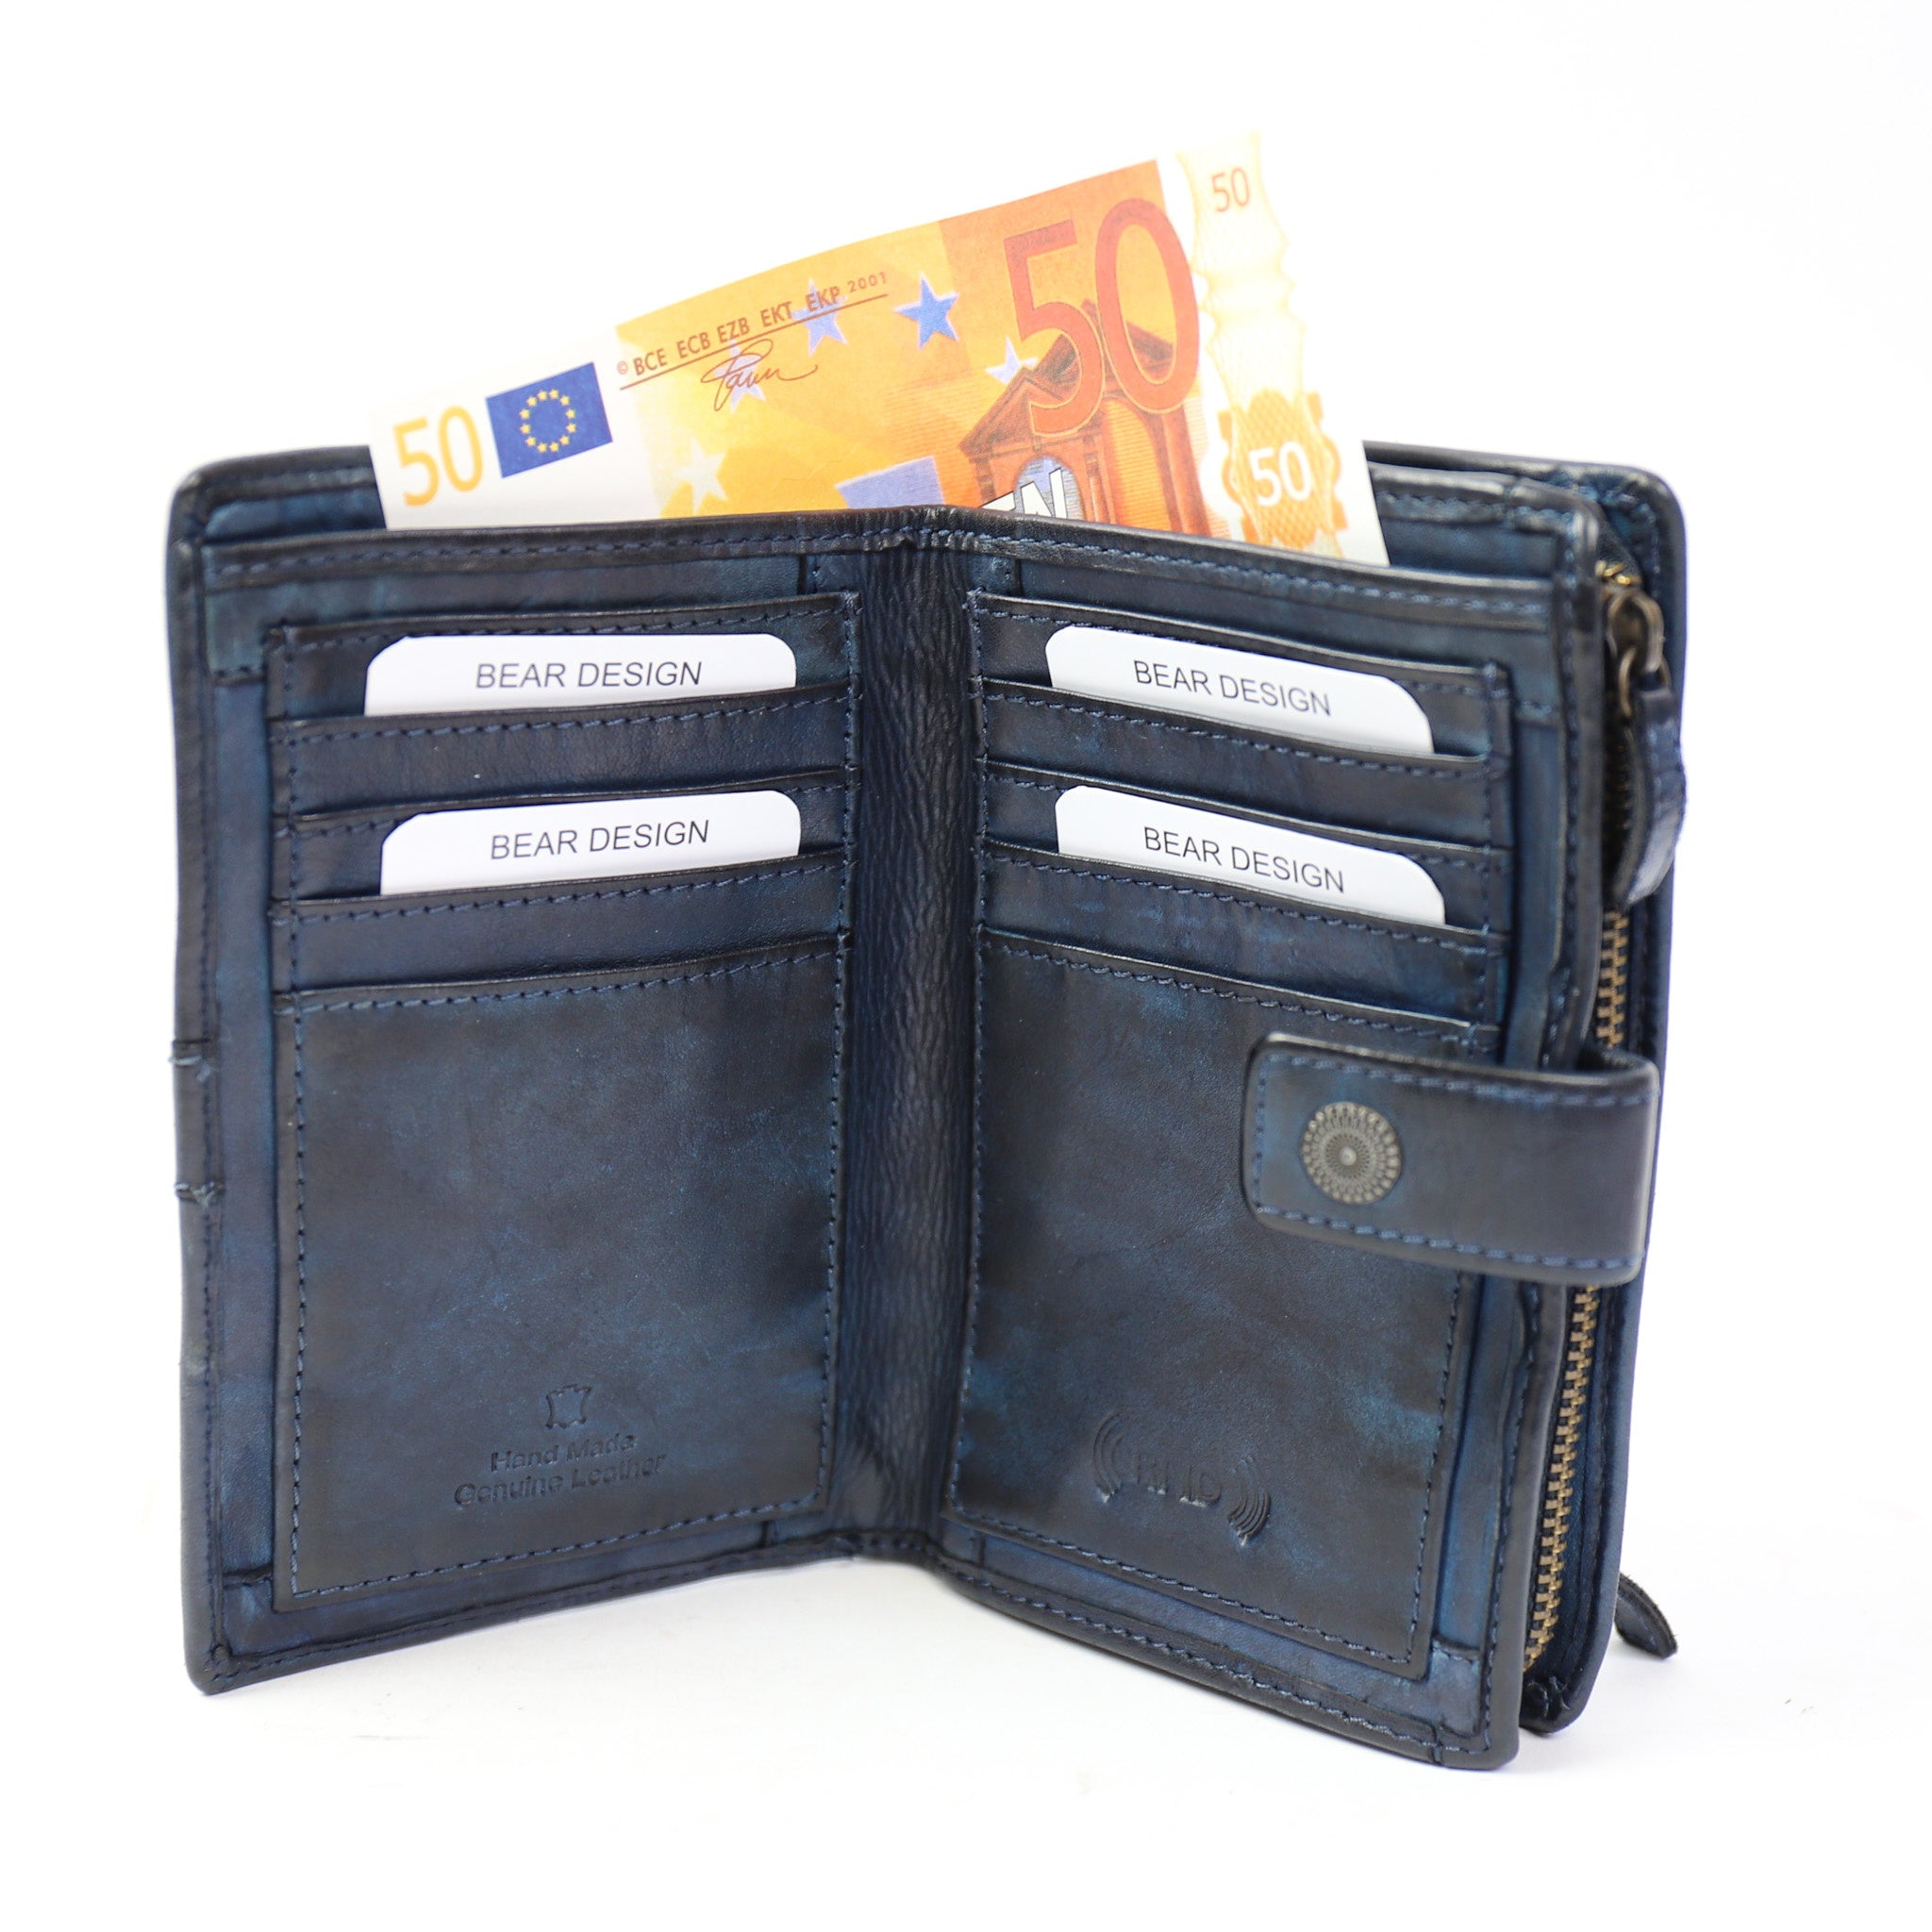 Wallet 'Sanne' dark blue studs - CL 15087